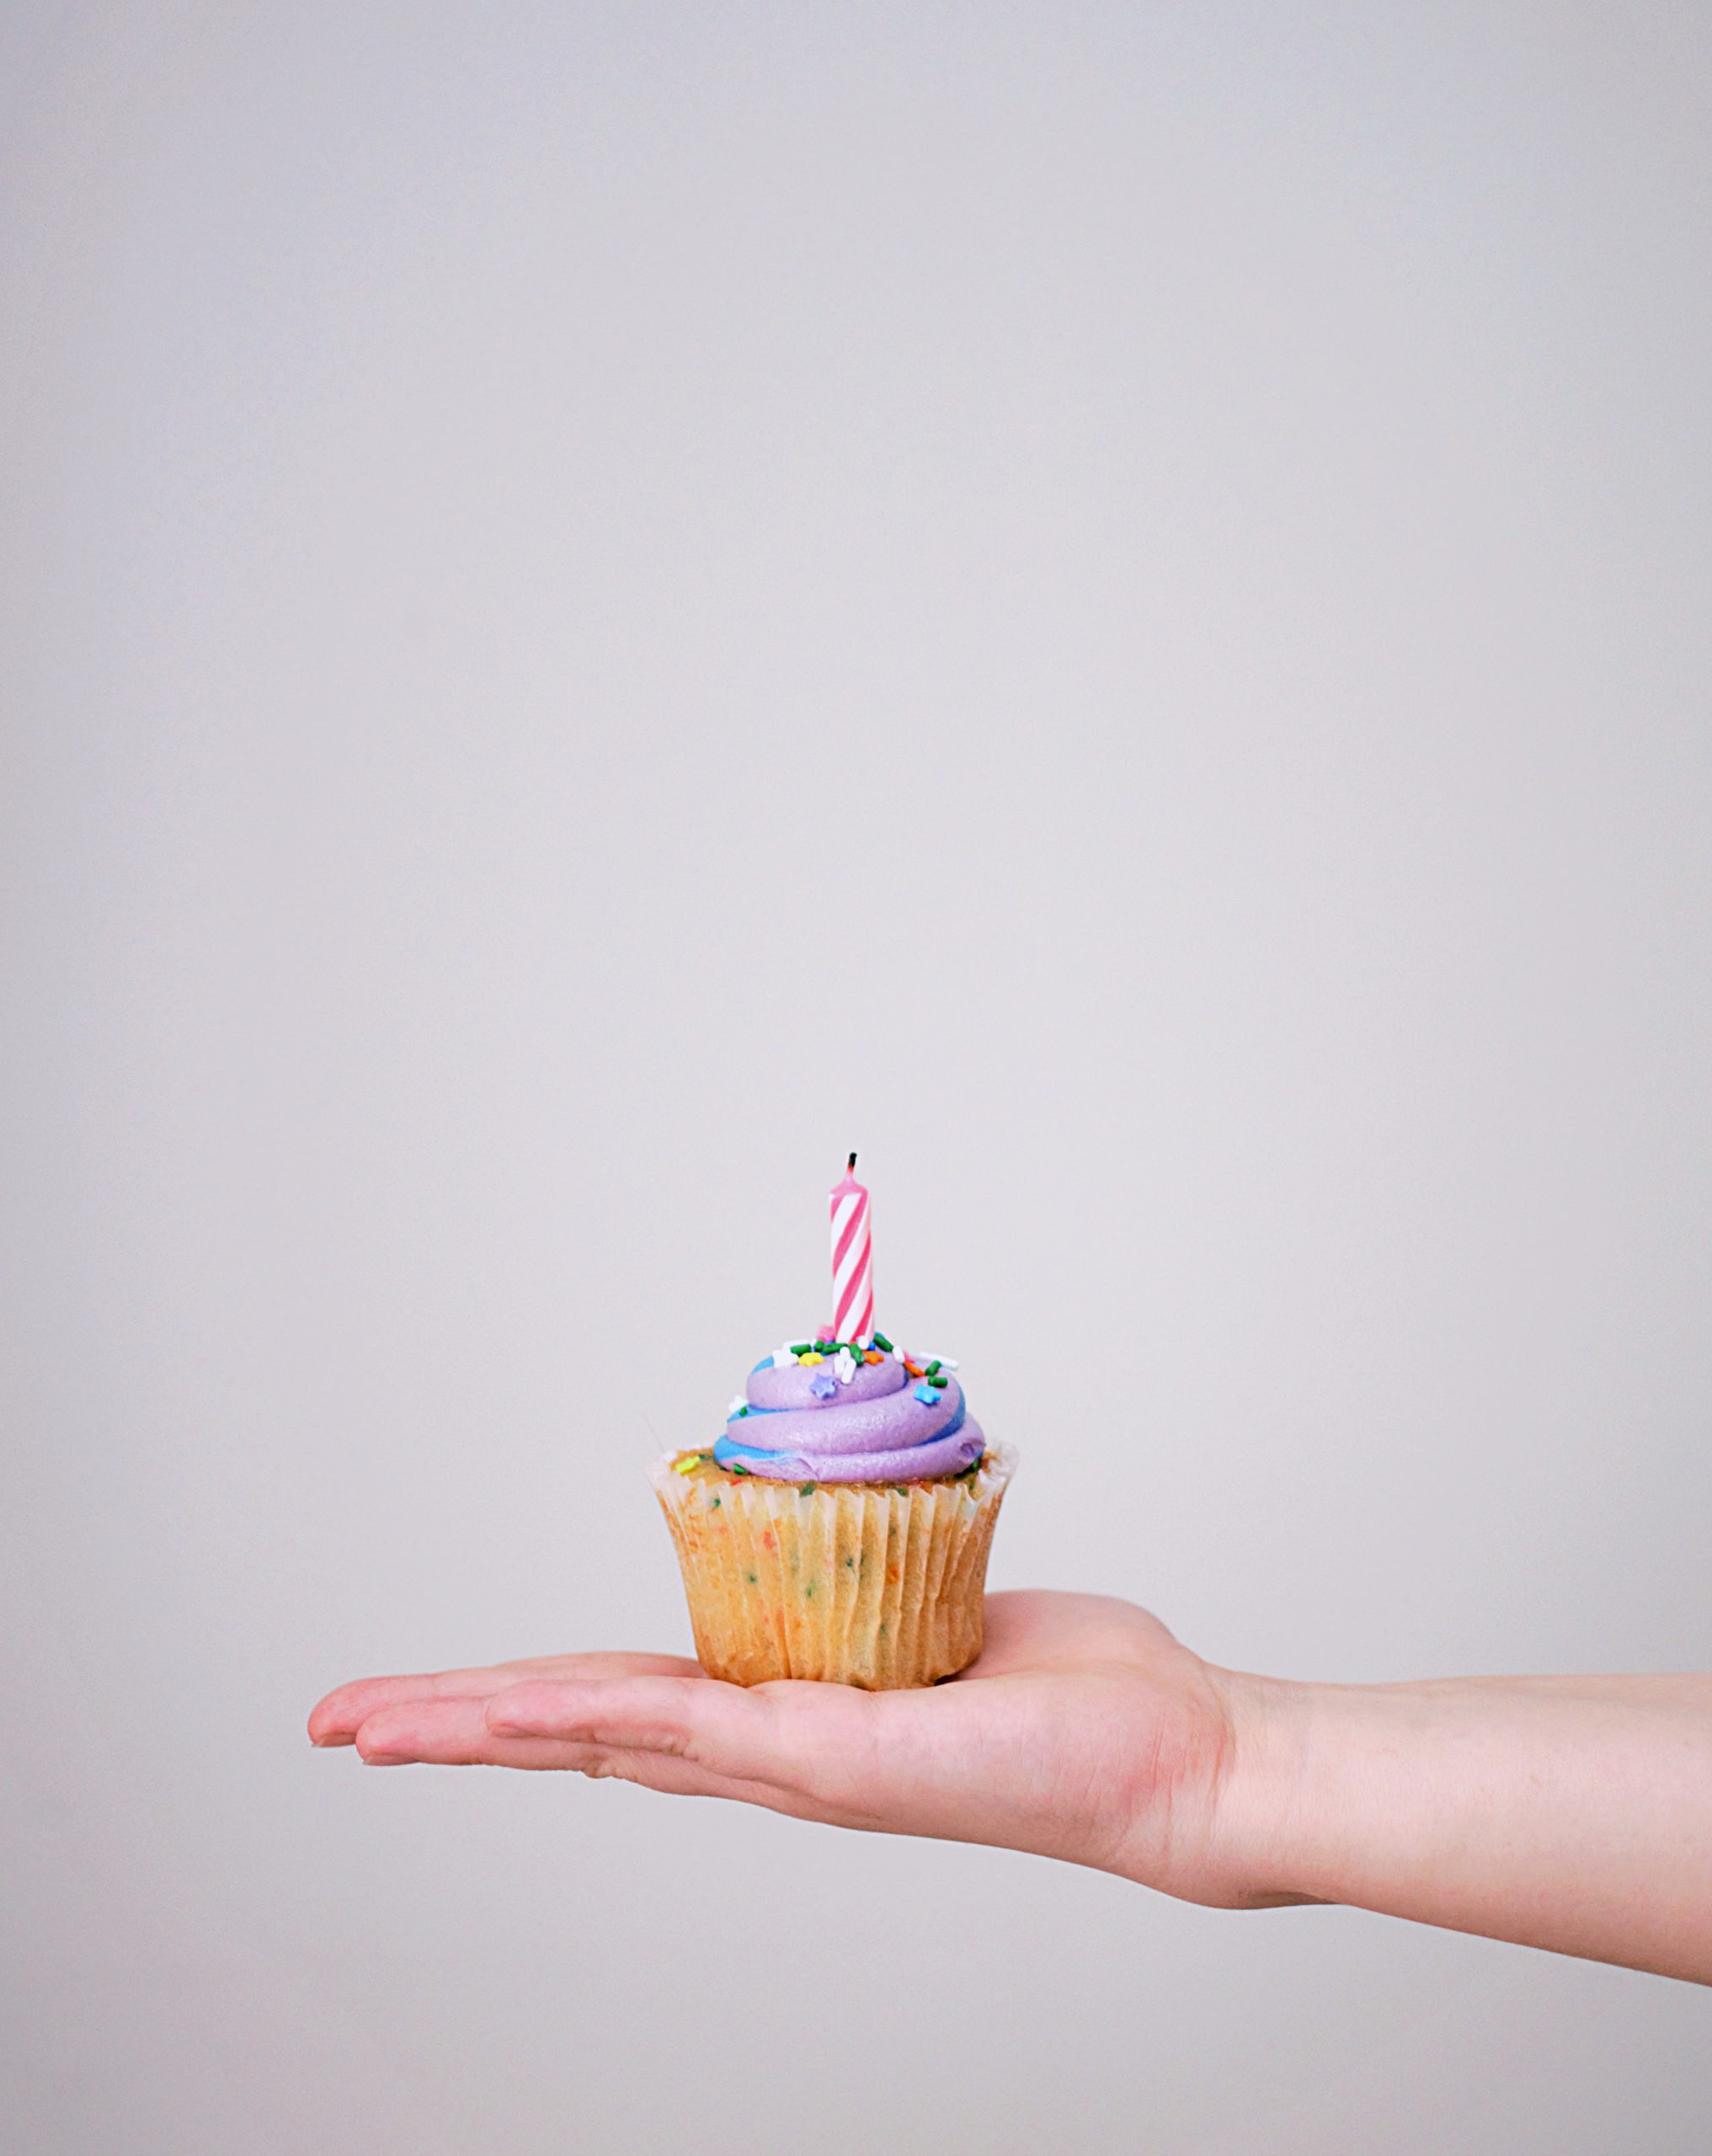 Three ways to make the best of your quarantine birthday